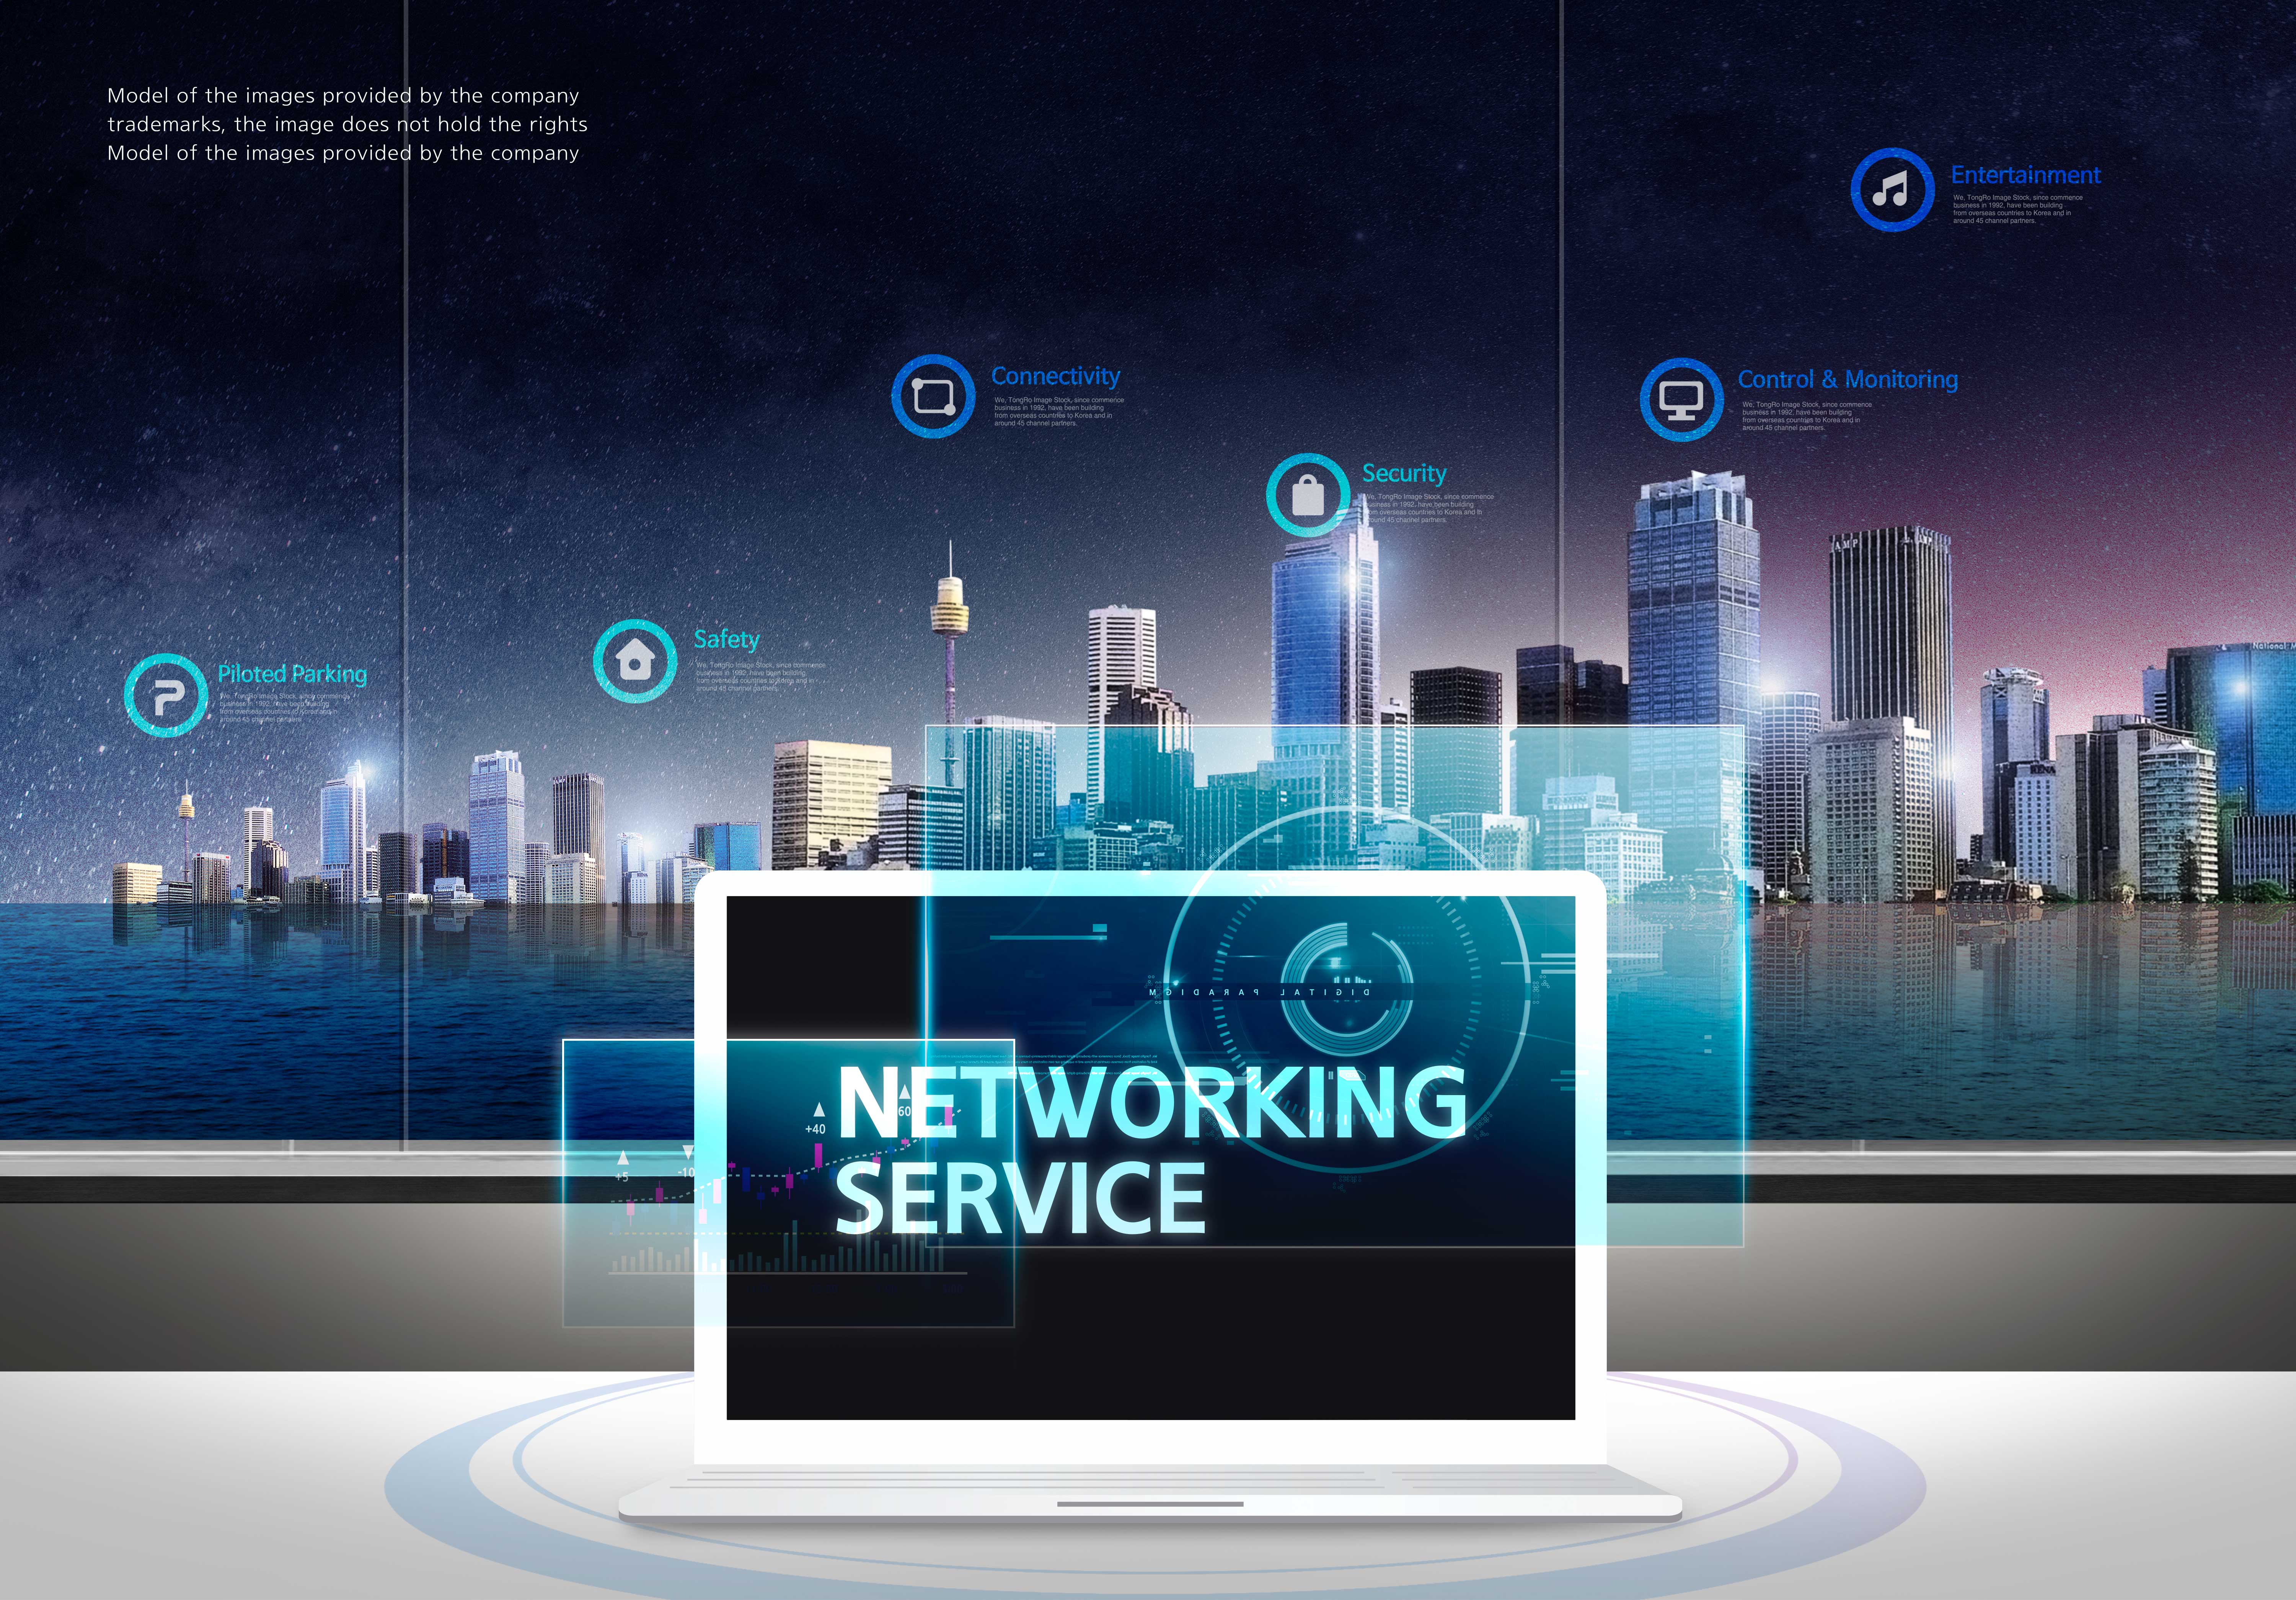 科技创新网络服务概念主题图形psd韩国素材设计素材模板